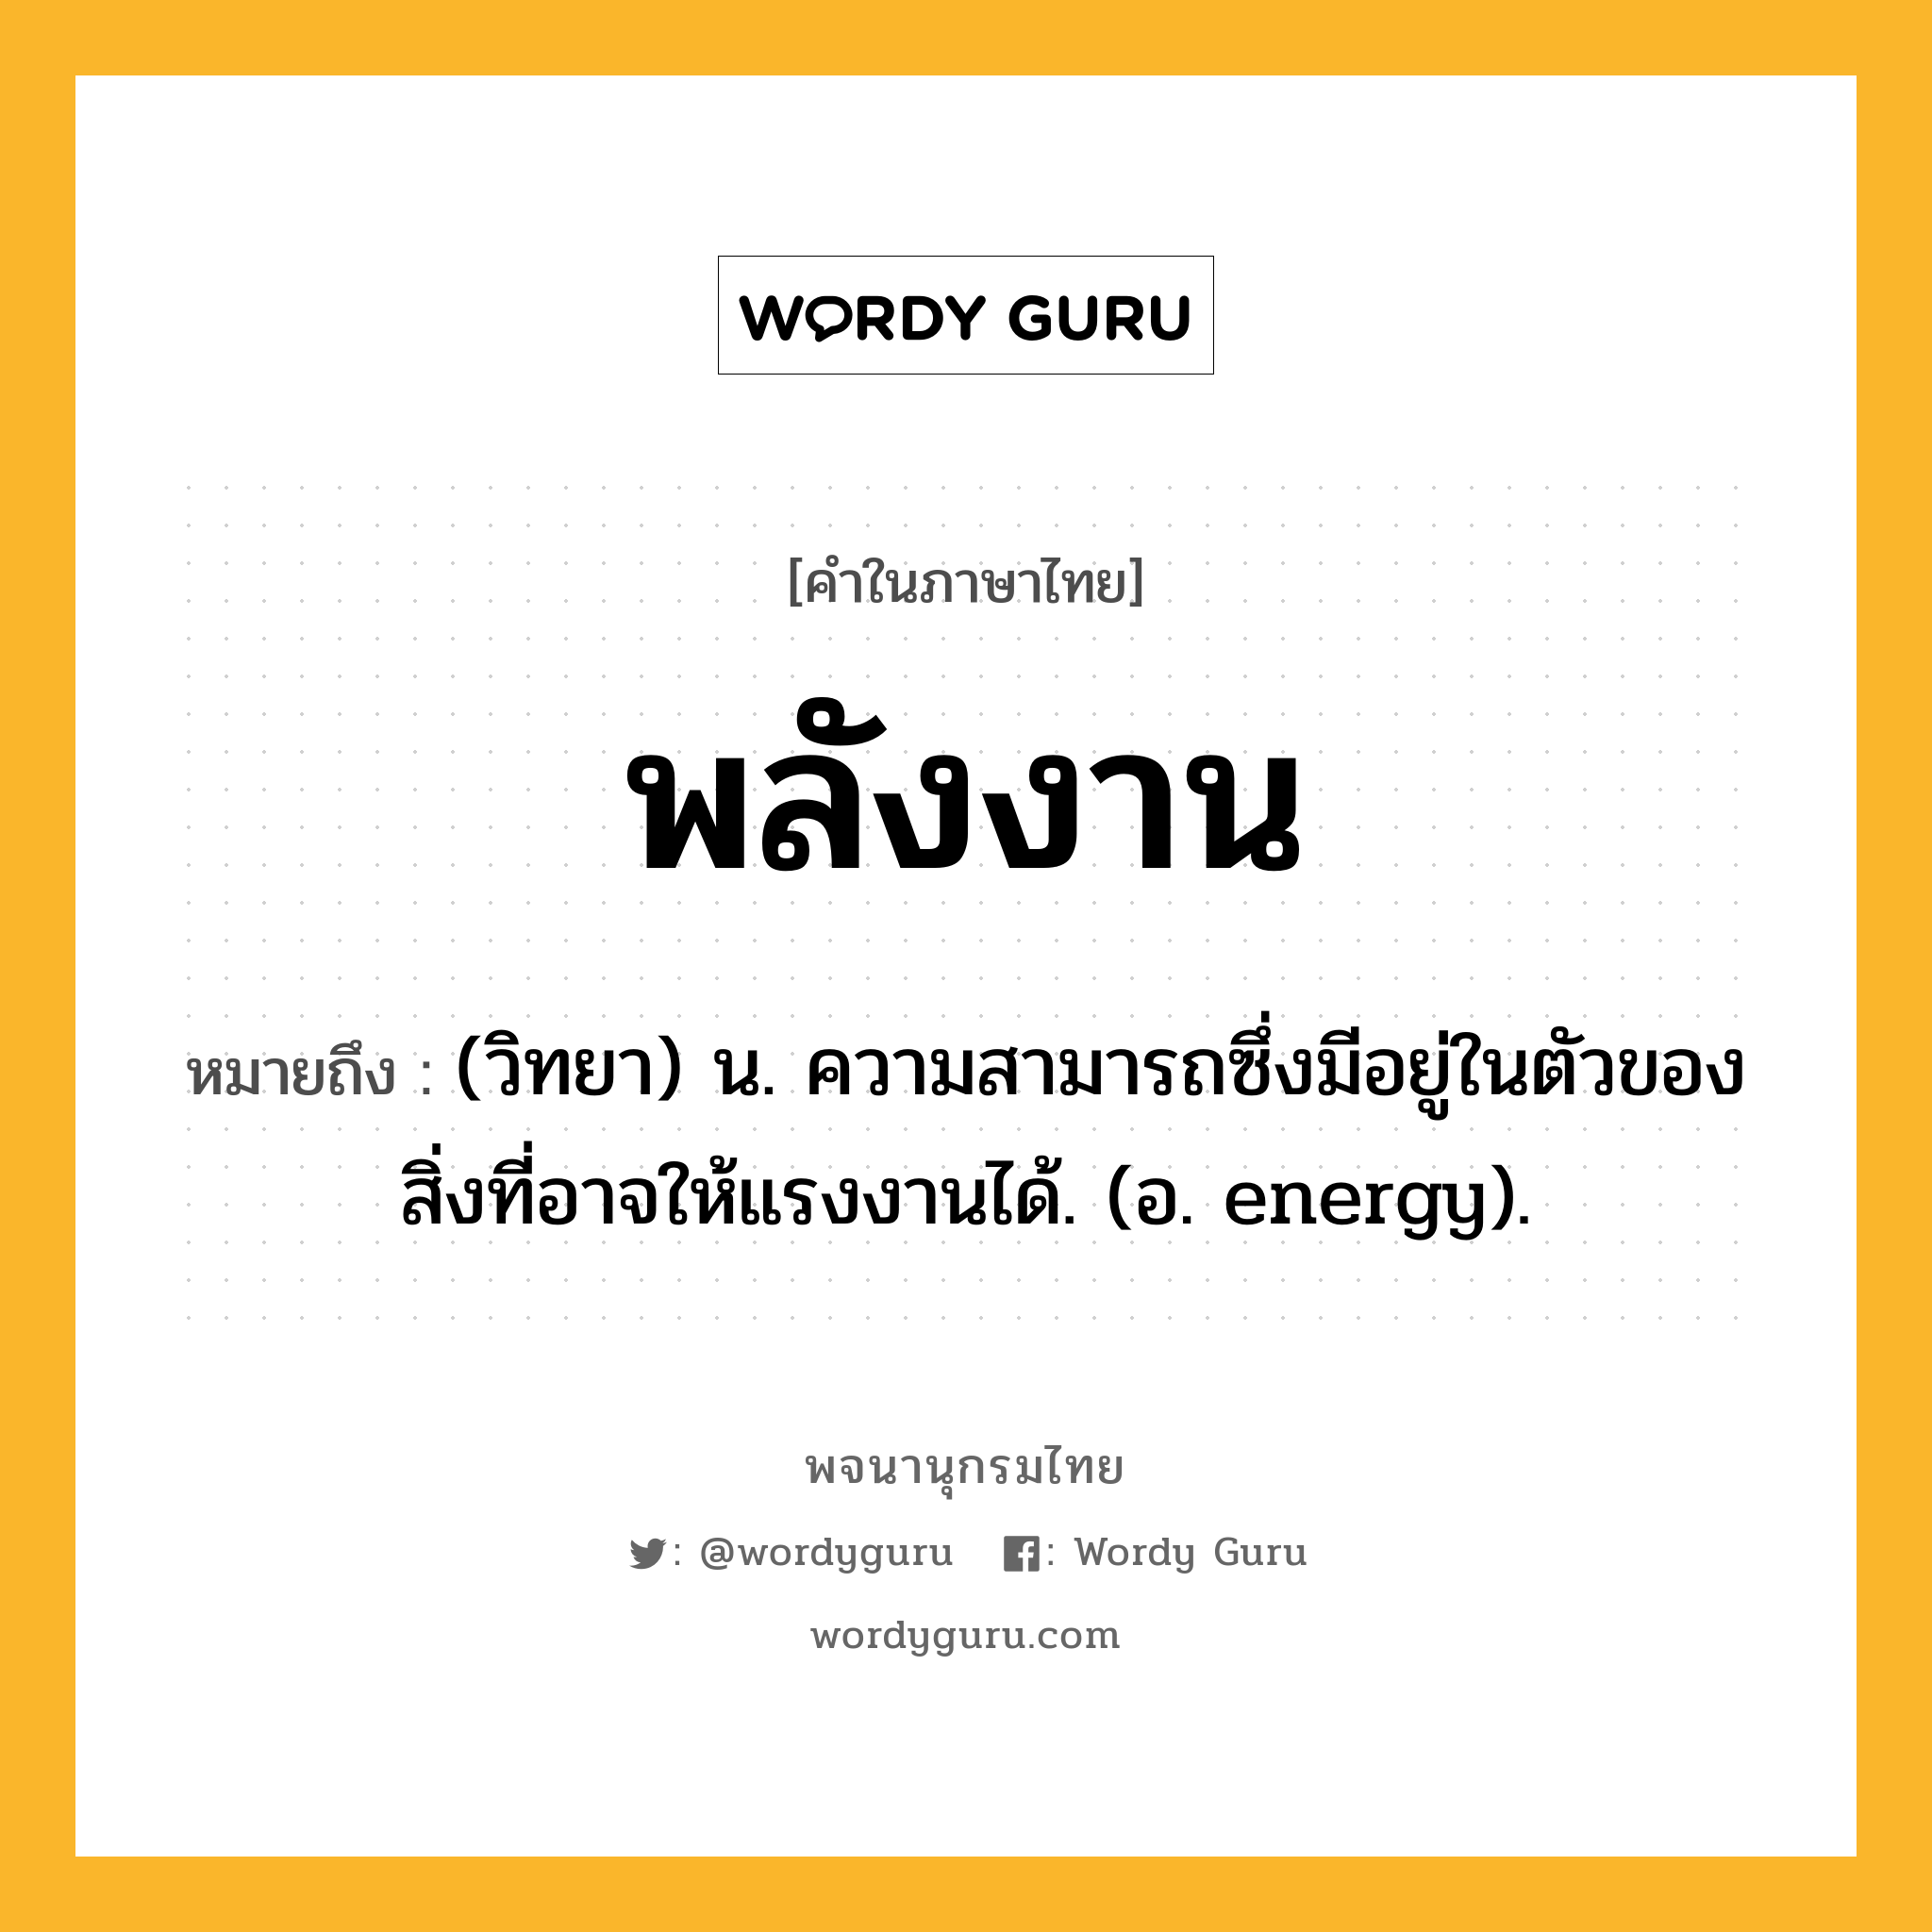 พลังงาน ความหมาย หมายถึงอะไร?, คำในภาษาไทย พลังงาน หมายถึง (วิทยา) น. ความสามารถซึ่งมีอยู่ในตัวของสิ่งที่อาจให้แรงงานได้. (อ. energy).